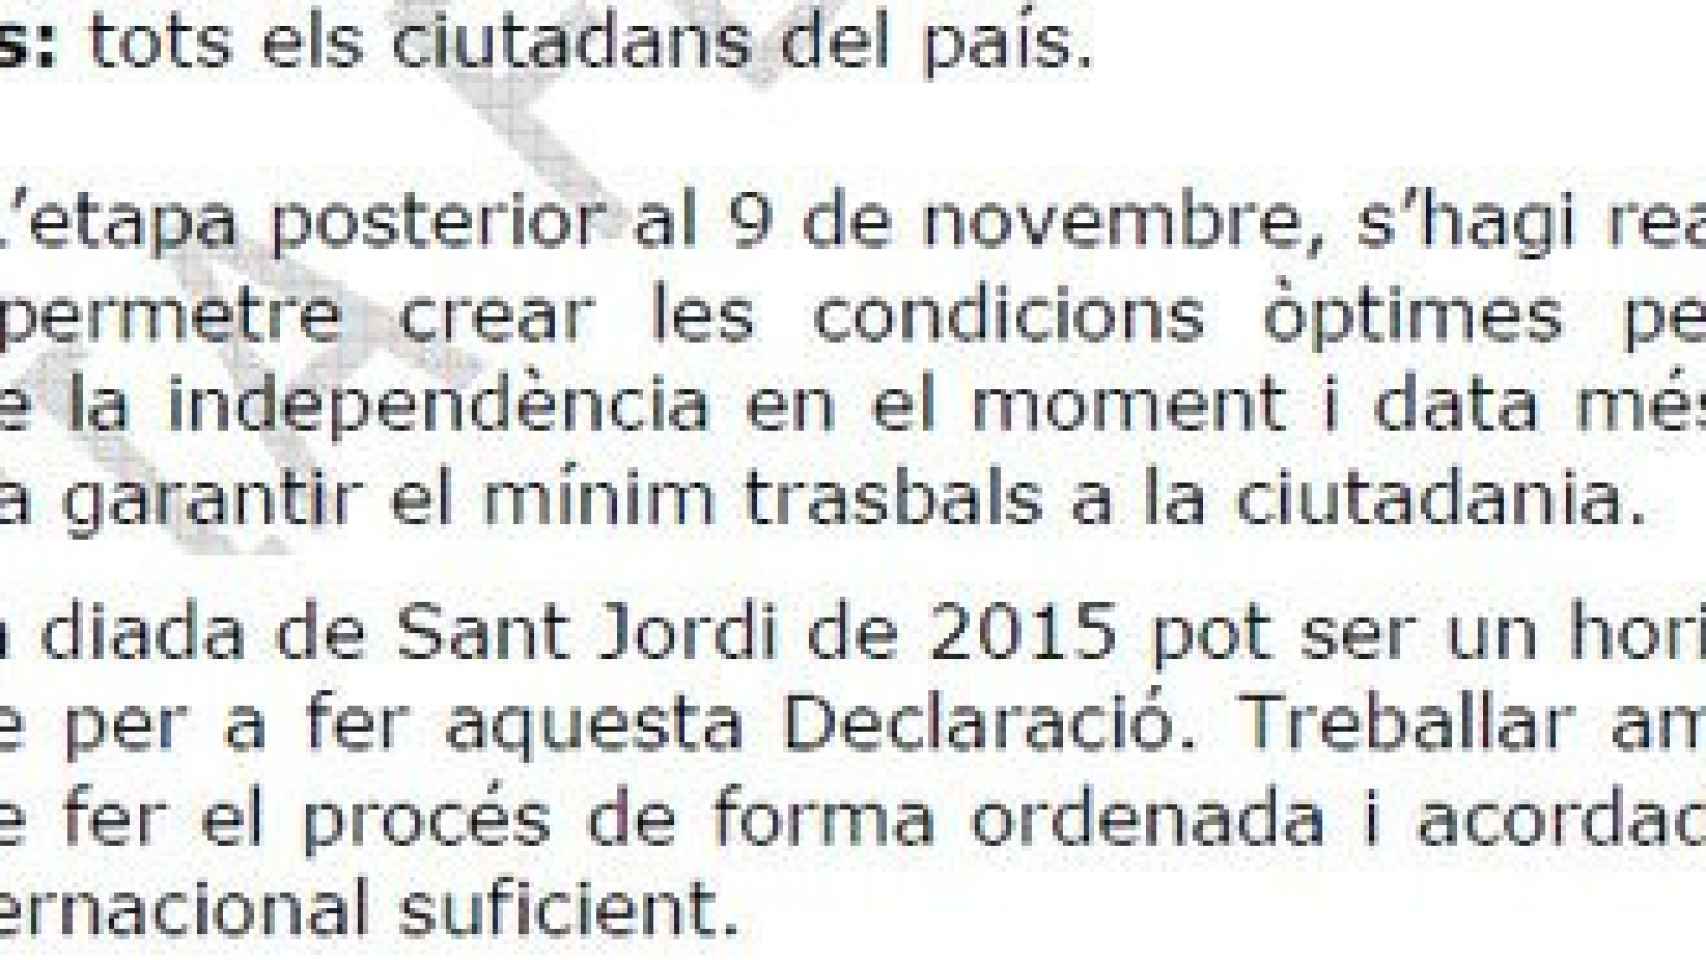 La hoja de ruta establecida por la ANC hace un año preveía declarar unilateralmente la independencia de Cataluña en la festividad de Sant Jordi de este 2015